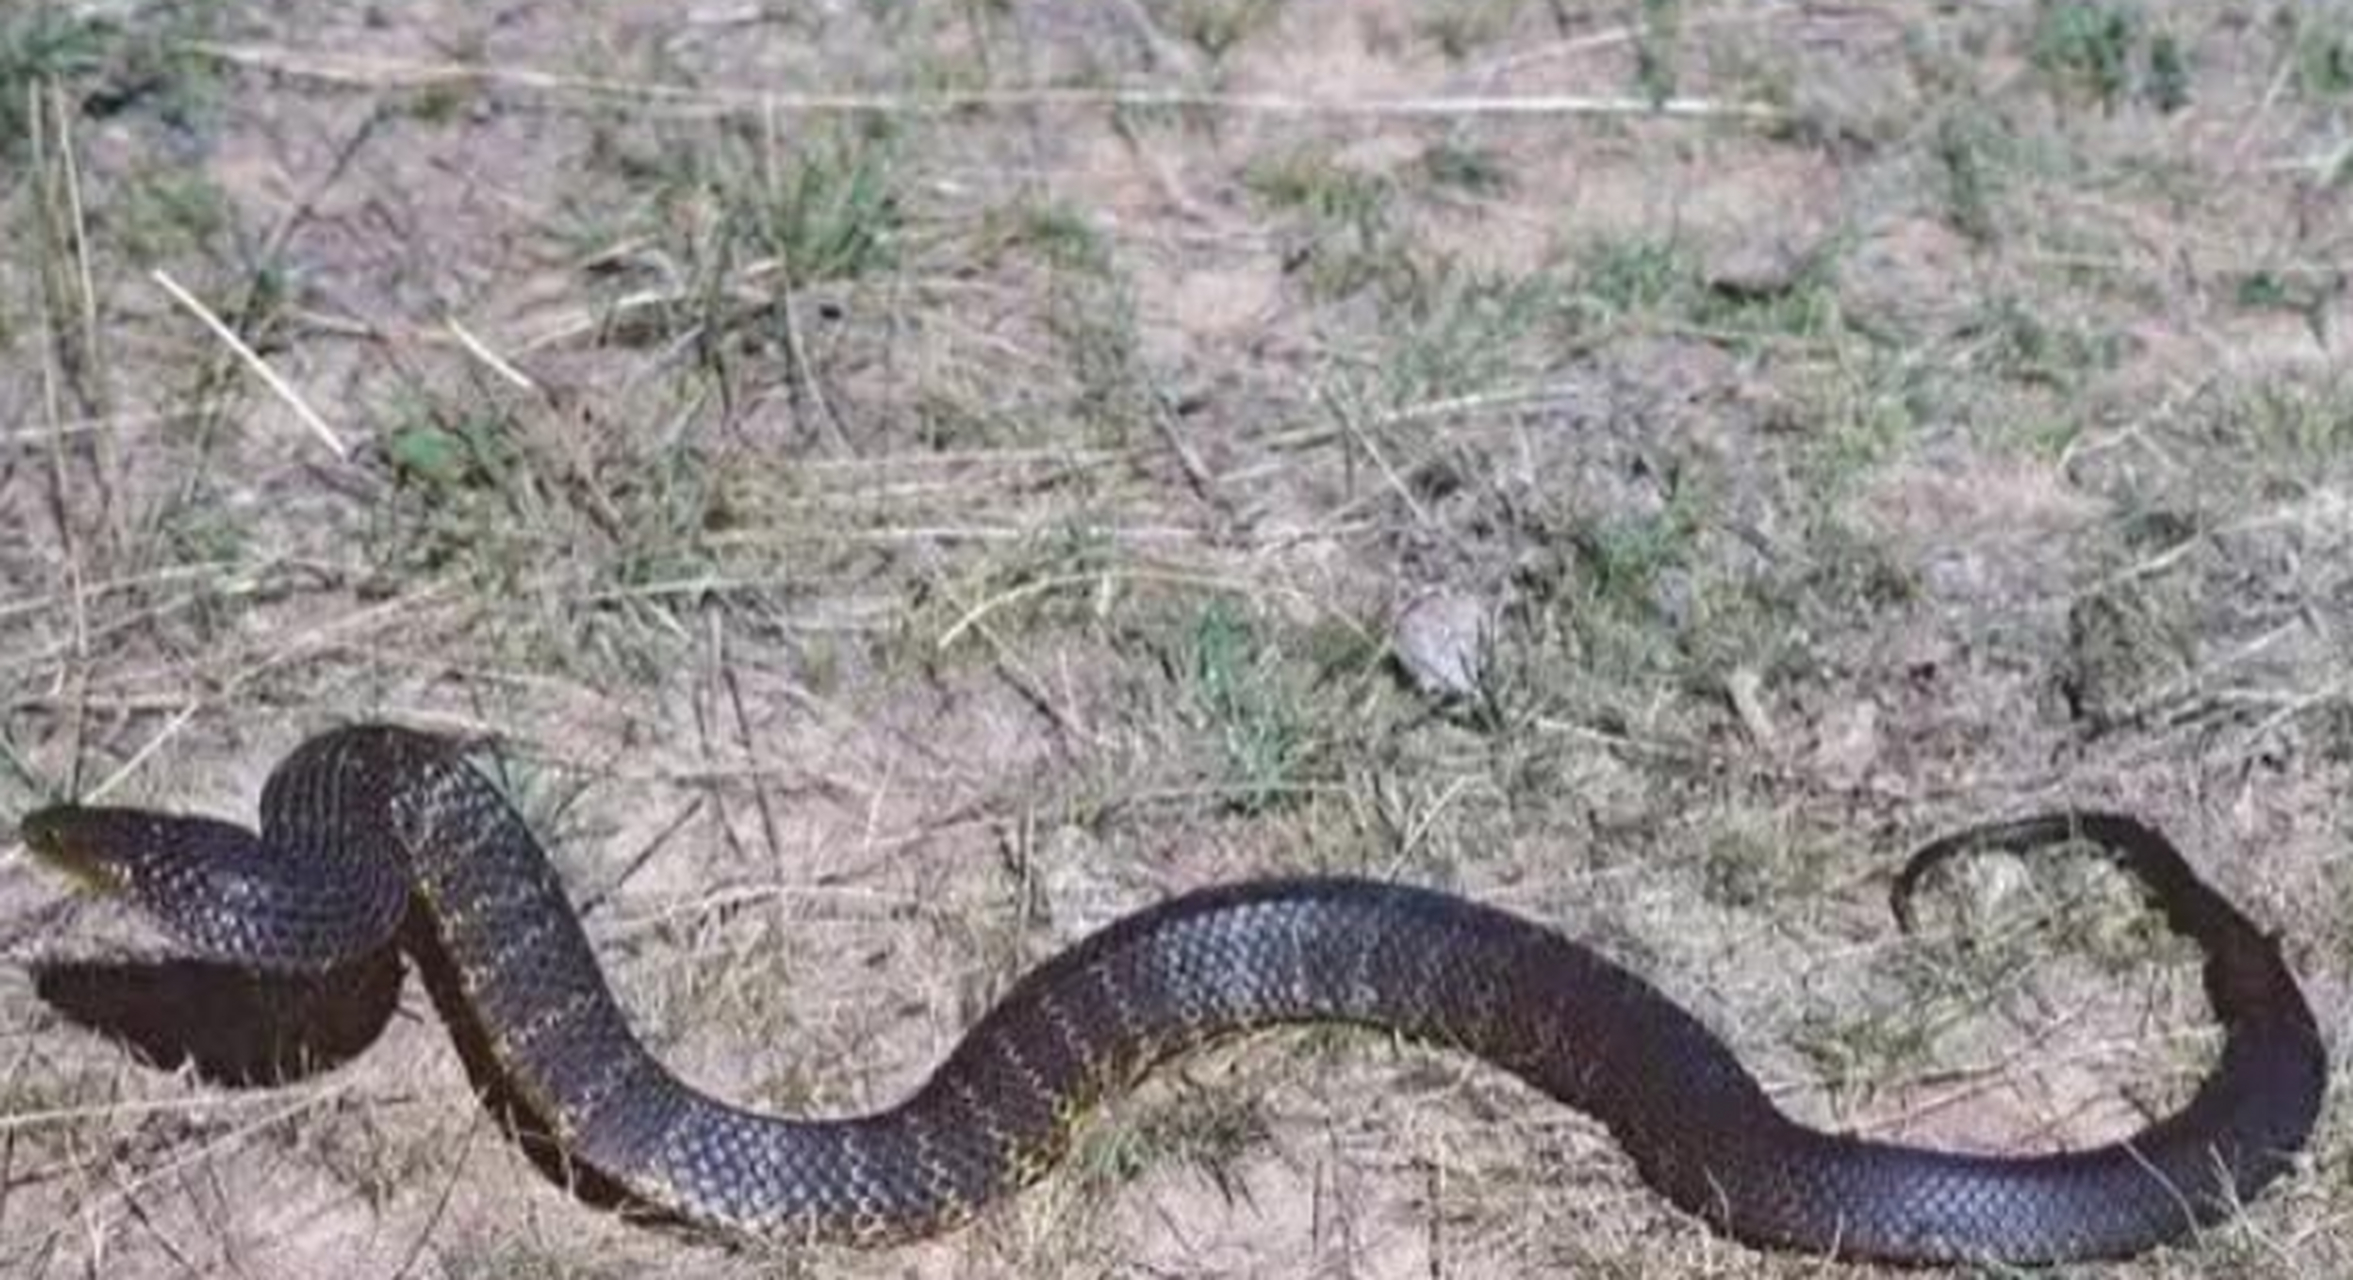 内陆太攀蛇是世界上最毒的毒蛇,它又叫细鳞太攀蛇,身长两米左右,分布